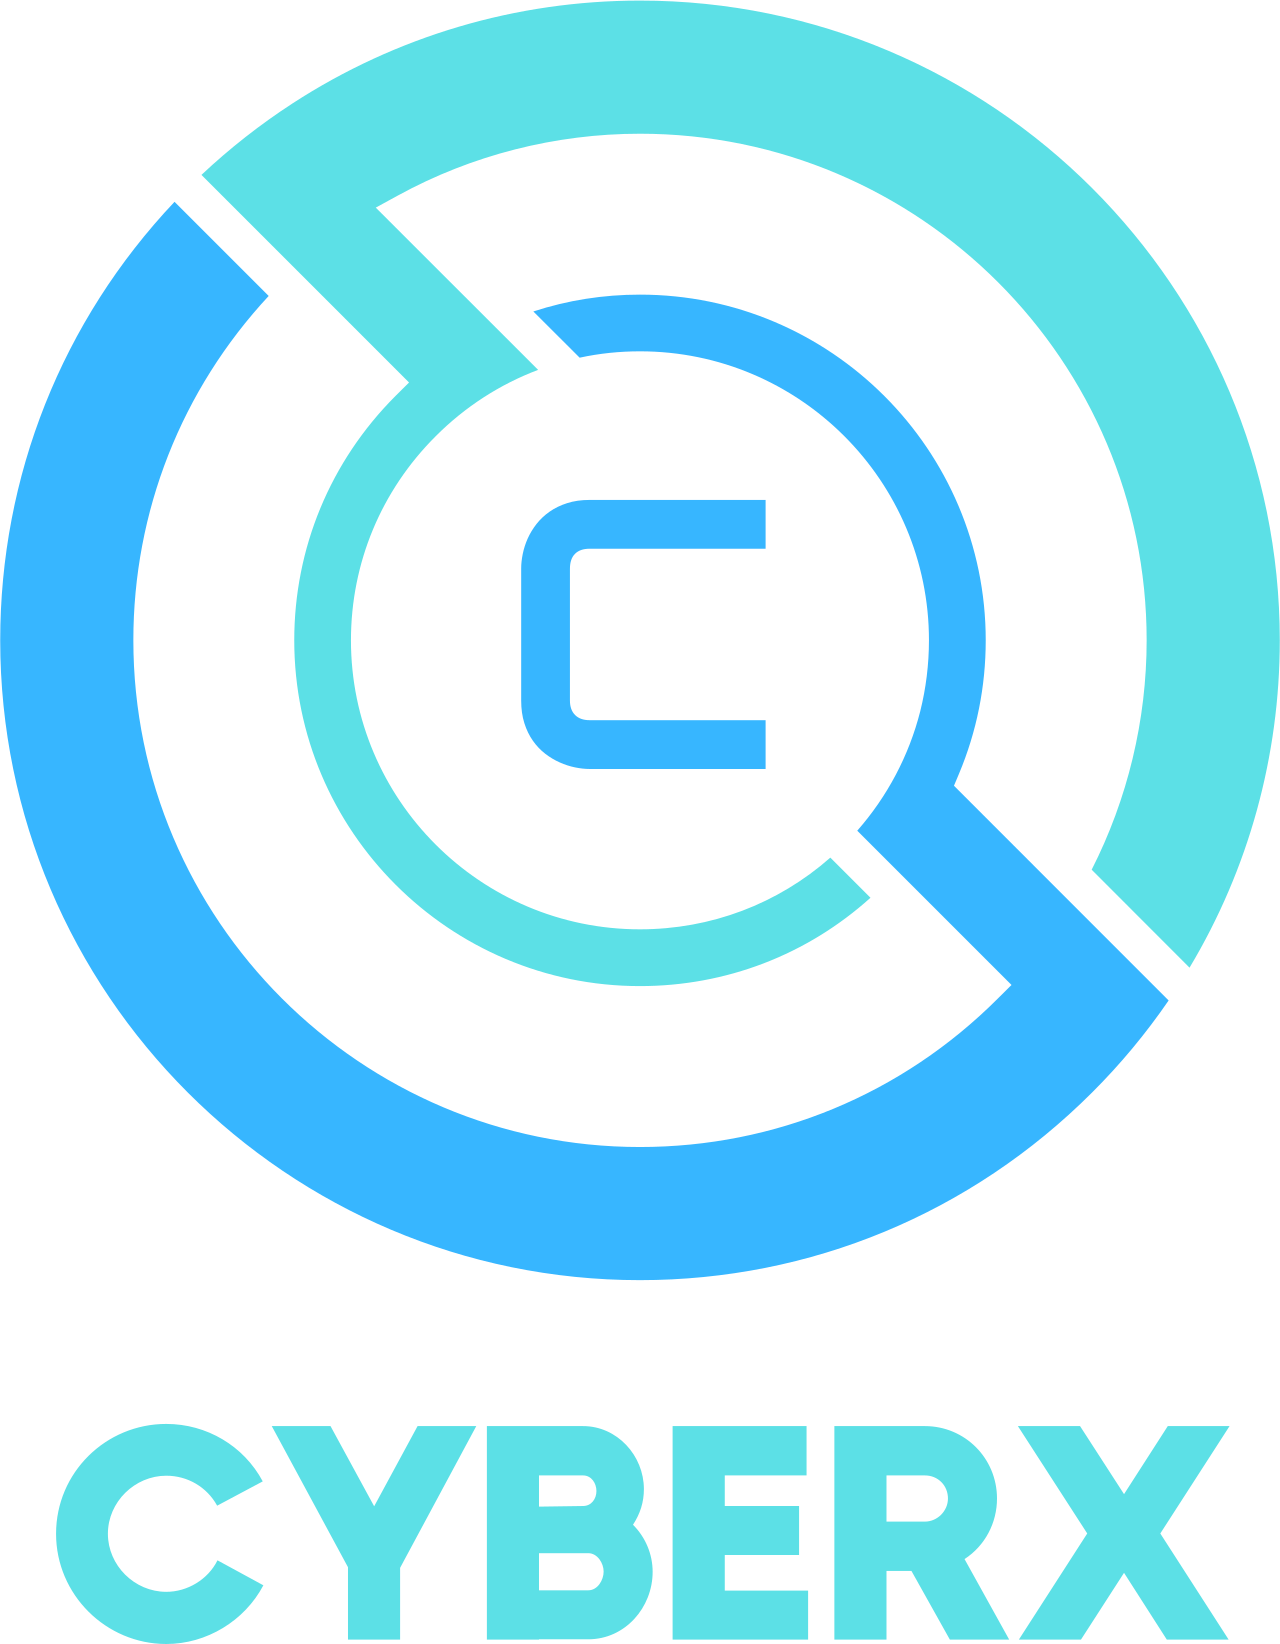 cyberx's web page